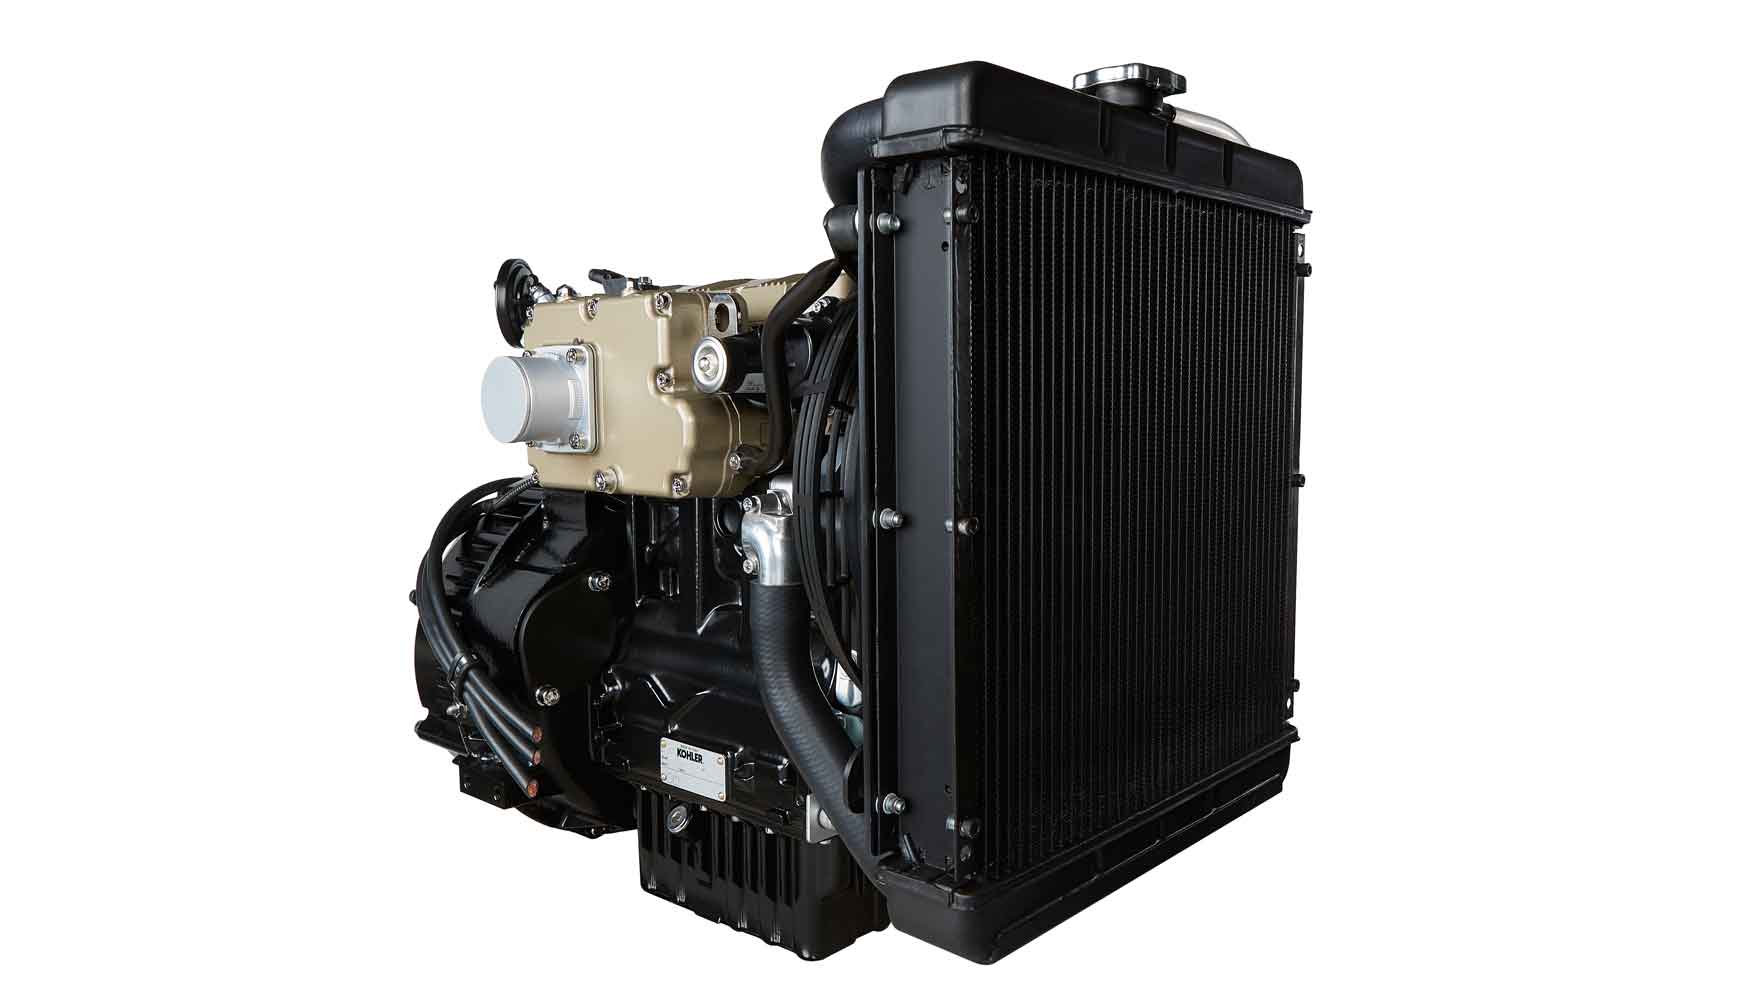 K-HEM genera energa usando una combinacin de un motor disel KDW 1003 de 18 kW, que cumple con los estndares de la Stage V y sin DPF...